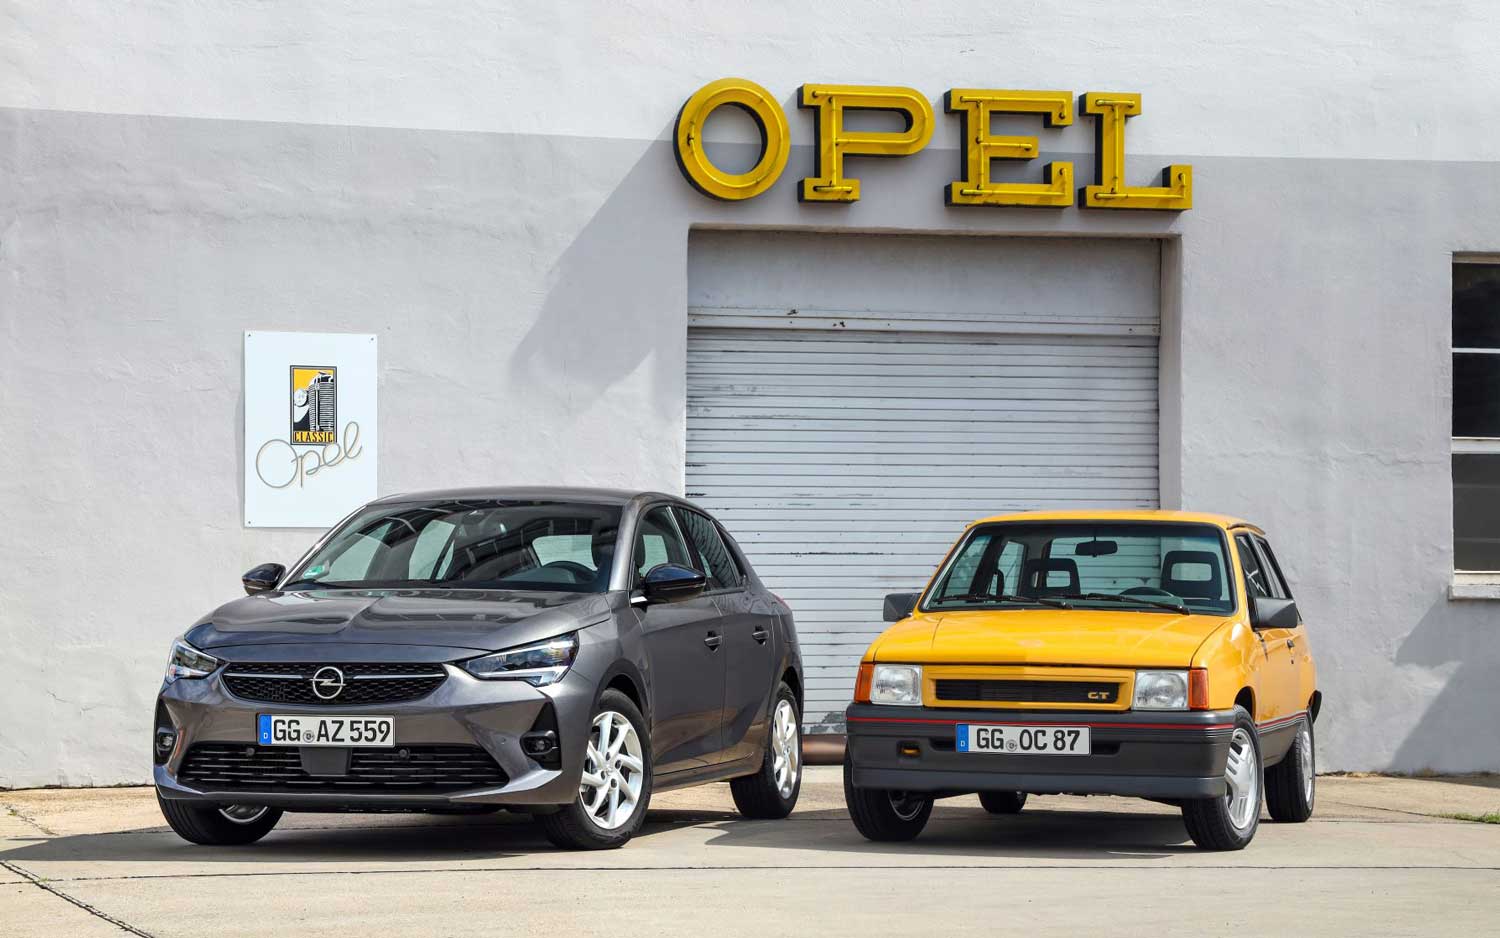 Покрај новата Corsa, Opel во Франкфурт ќе изложи и една своја легенда